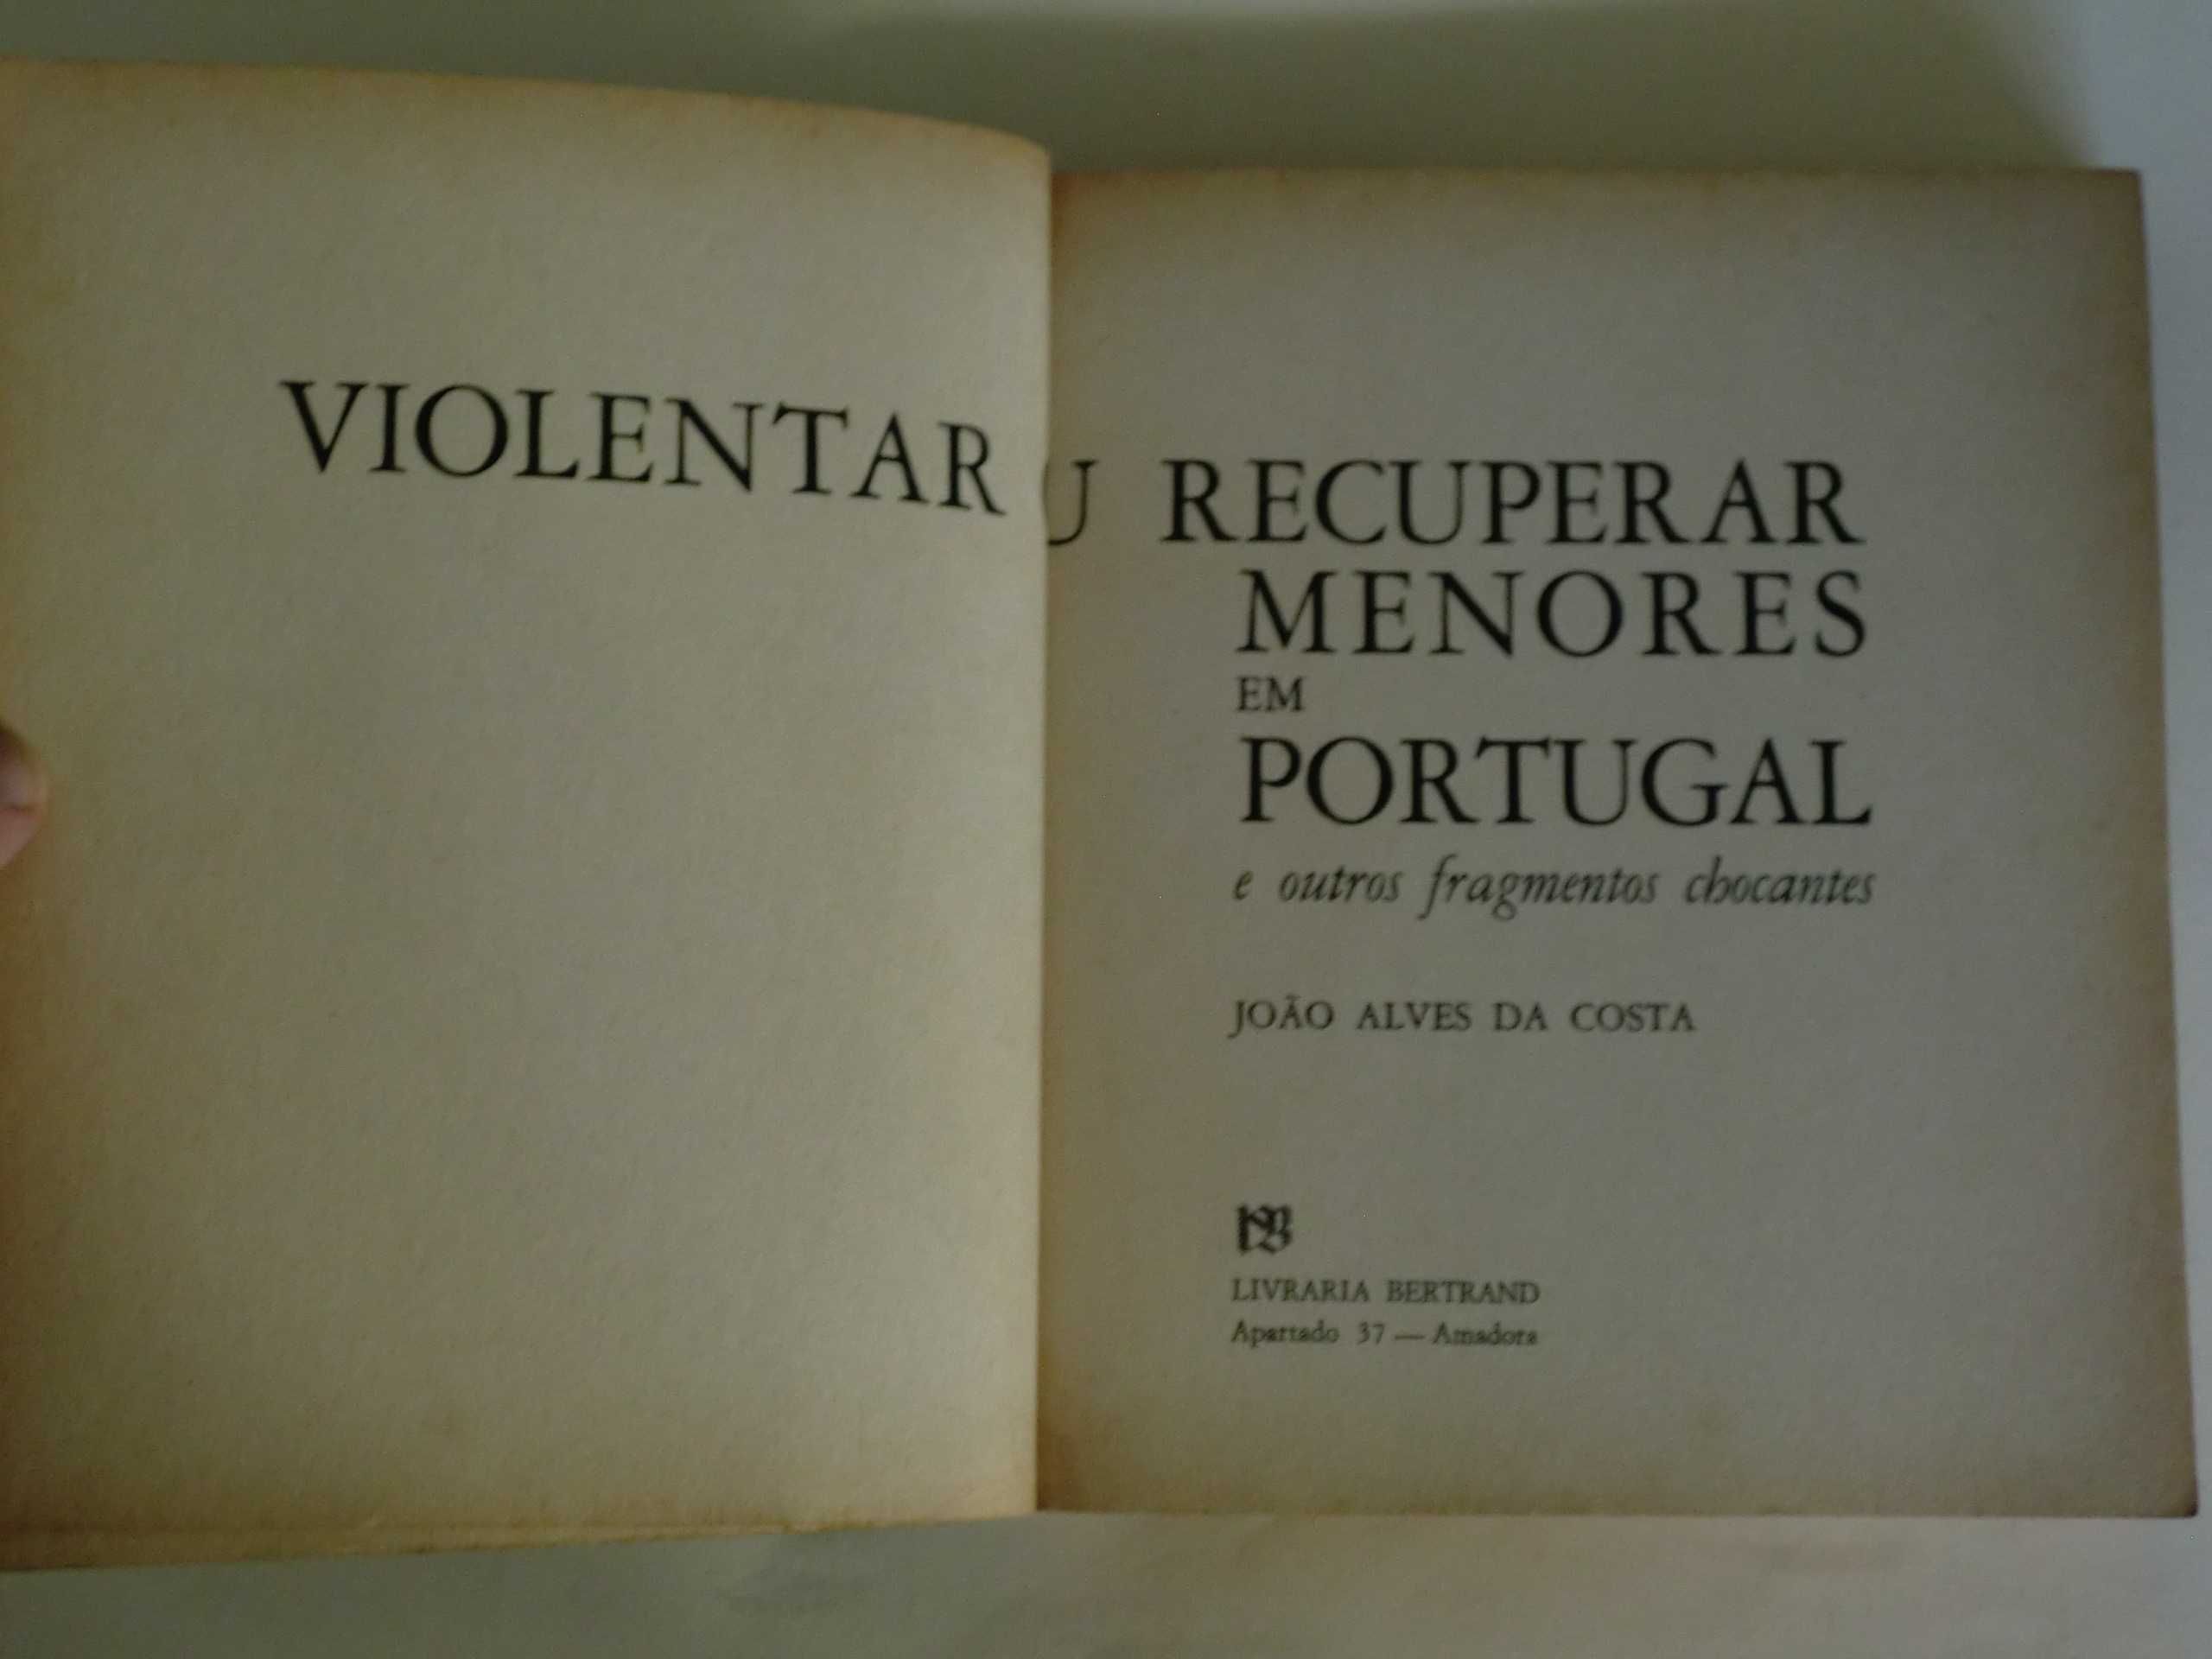 Violentar ou recuperar menores em Portugal
de João Alves da Costa